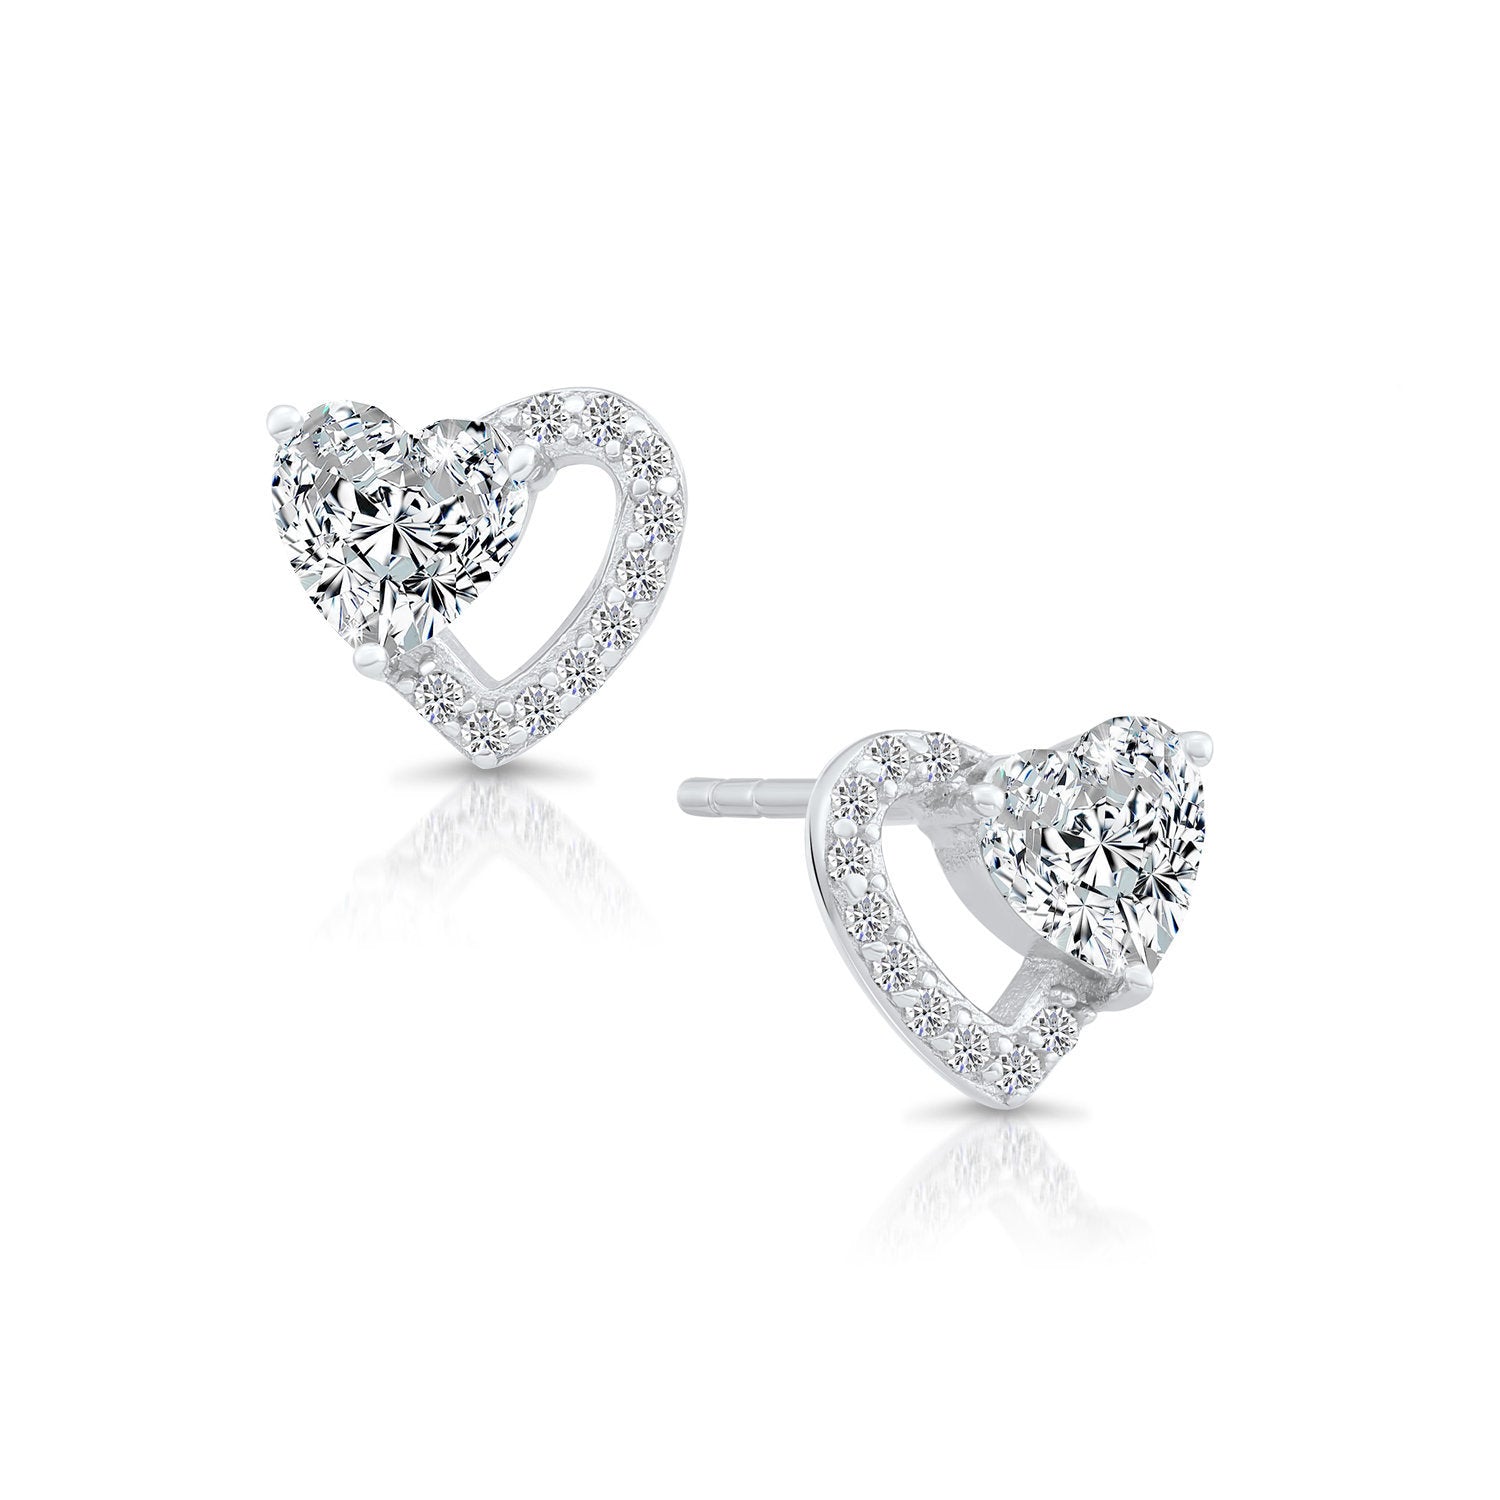 CZ Double Heart Stud Earrings in Sterling Silver